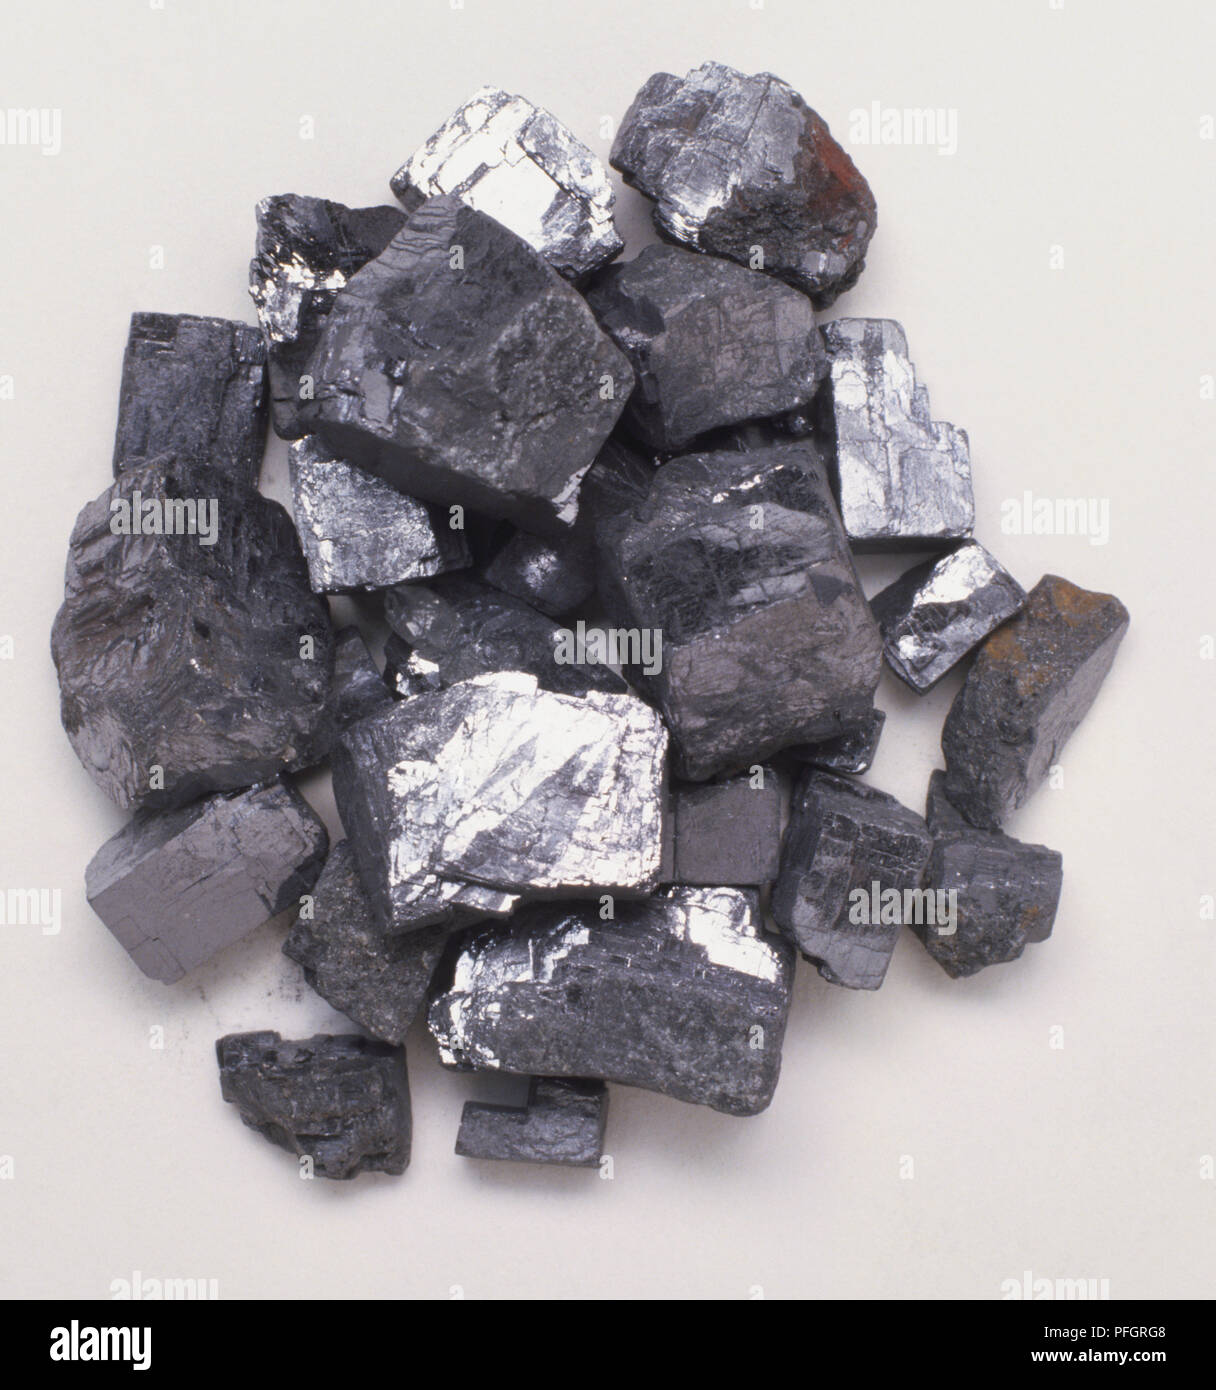 La pyrite de fer, FeS2, échantillon de sulfure de fer, ou l'or des fous du minerai. Banque D'Images